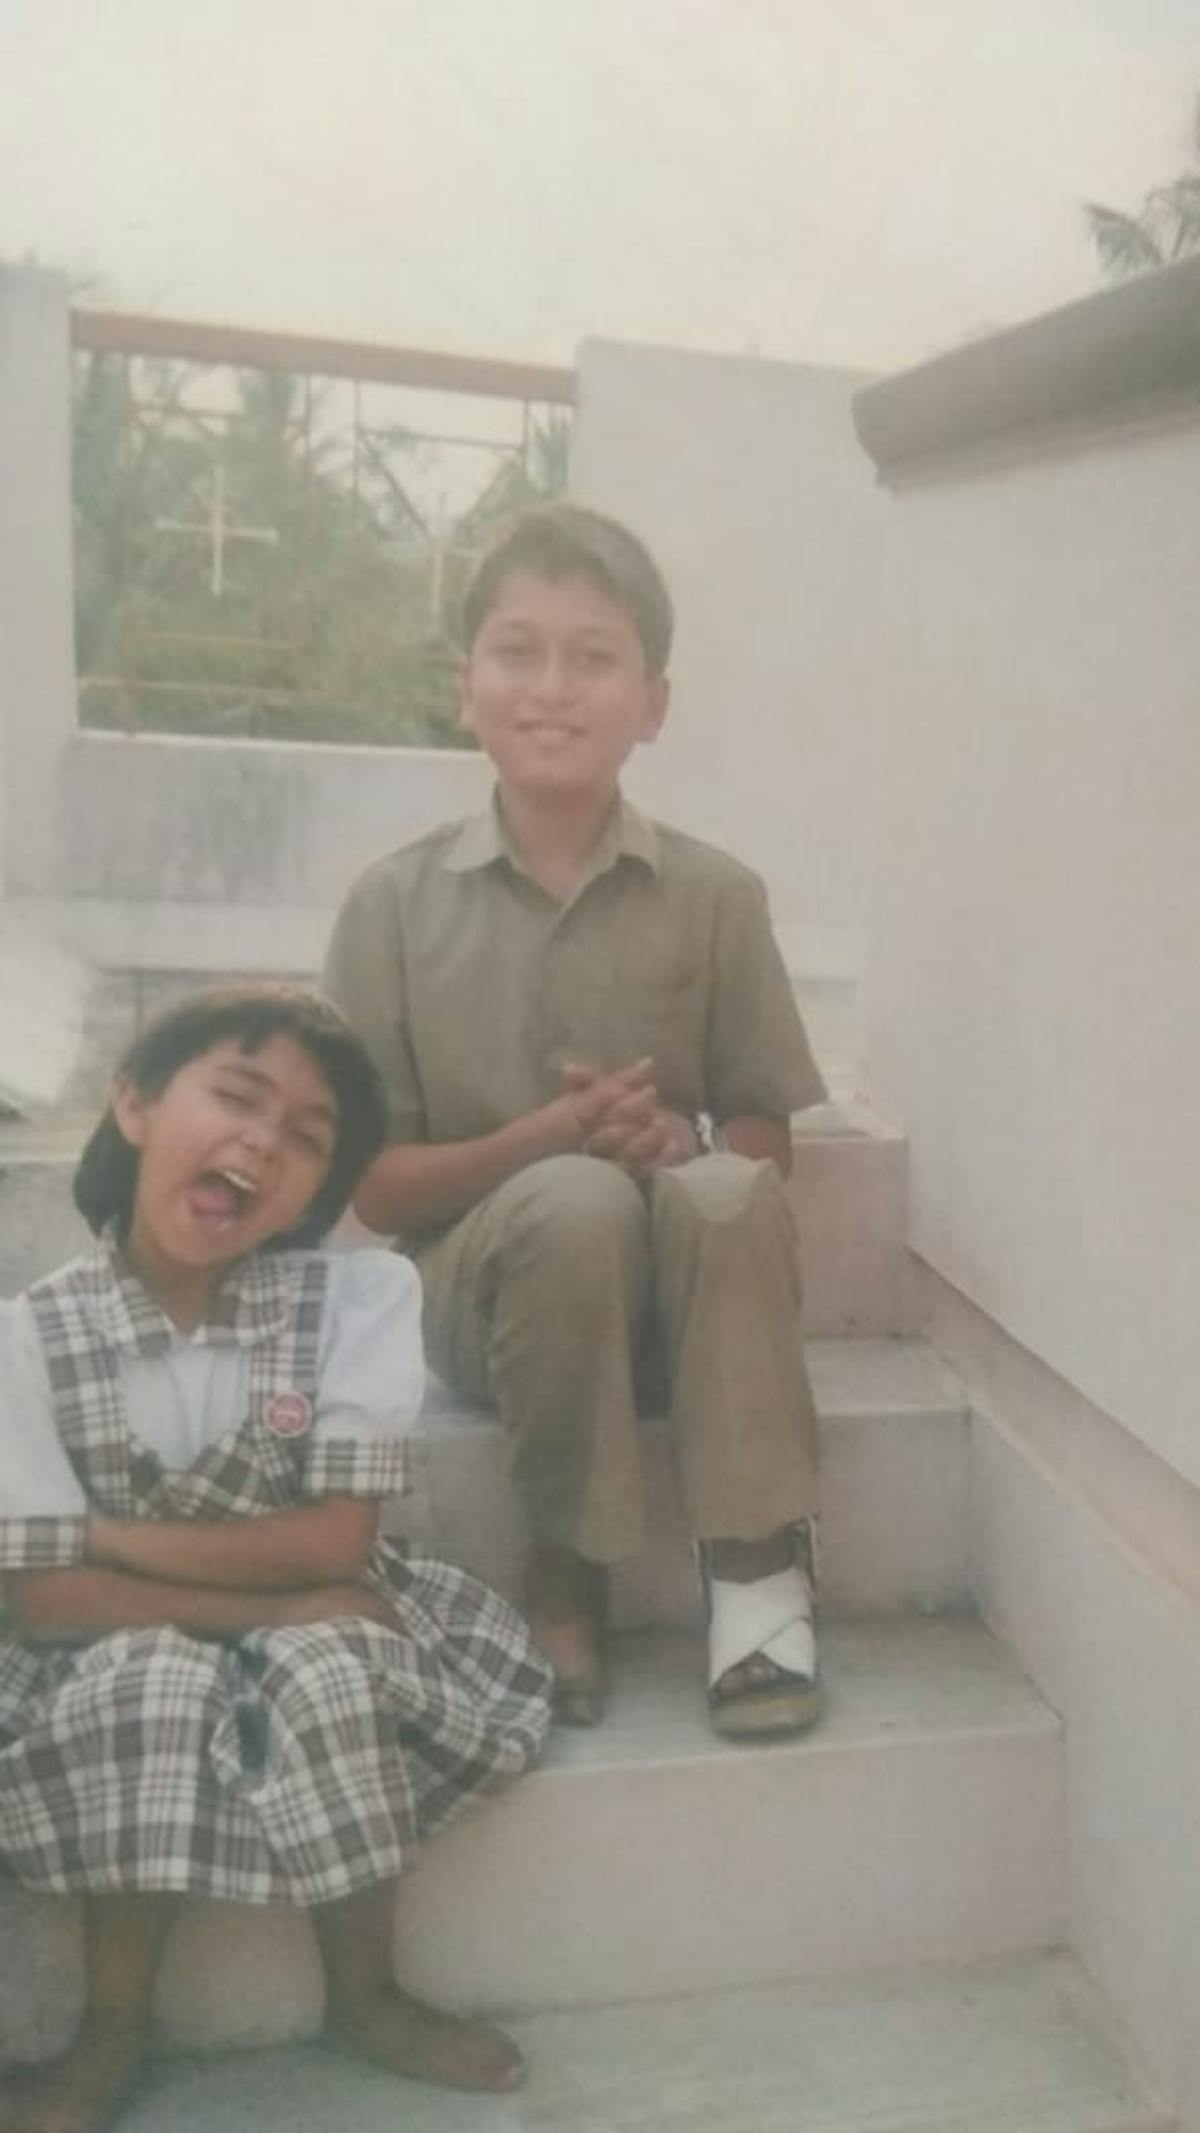 Two kids in school uniforms